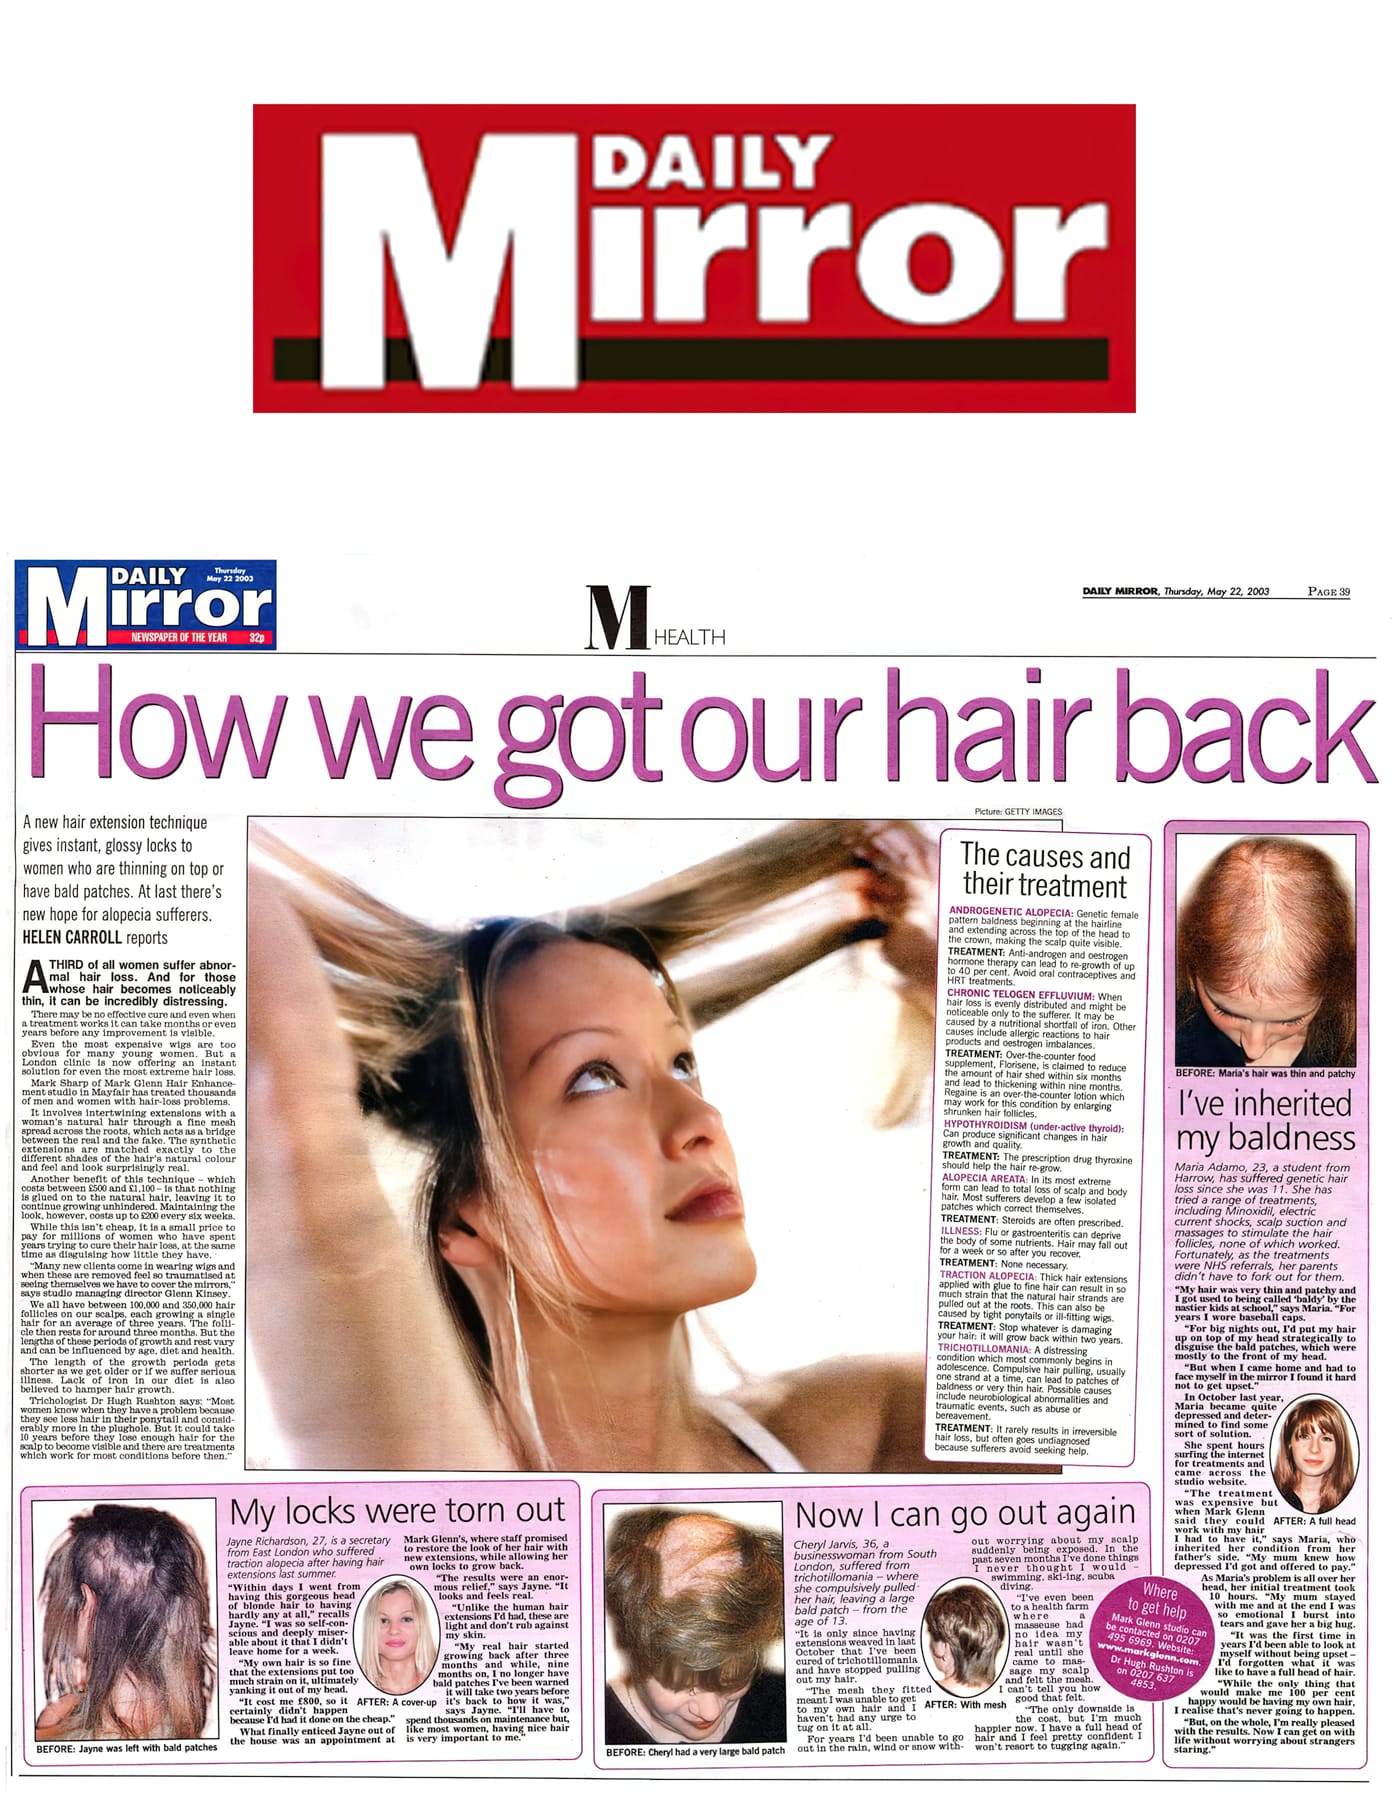 Daily Mirror hails Mark Glenn's female hair loss techniques